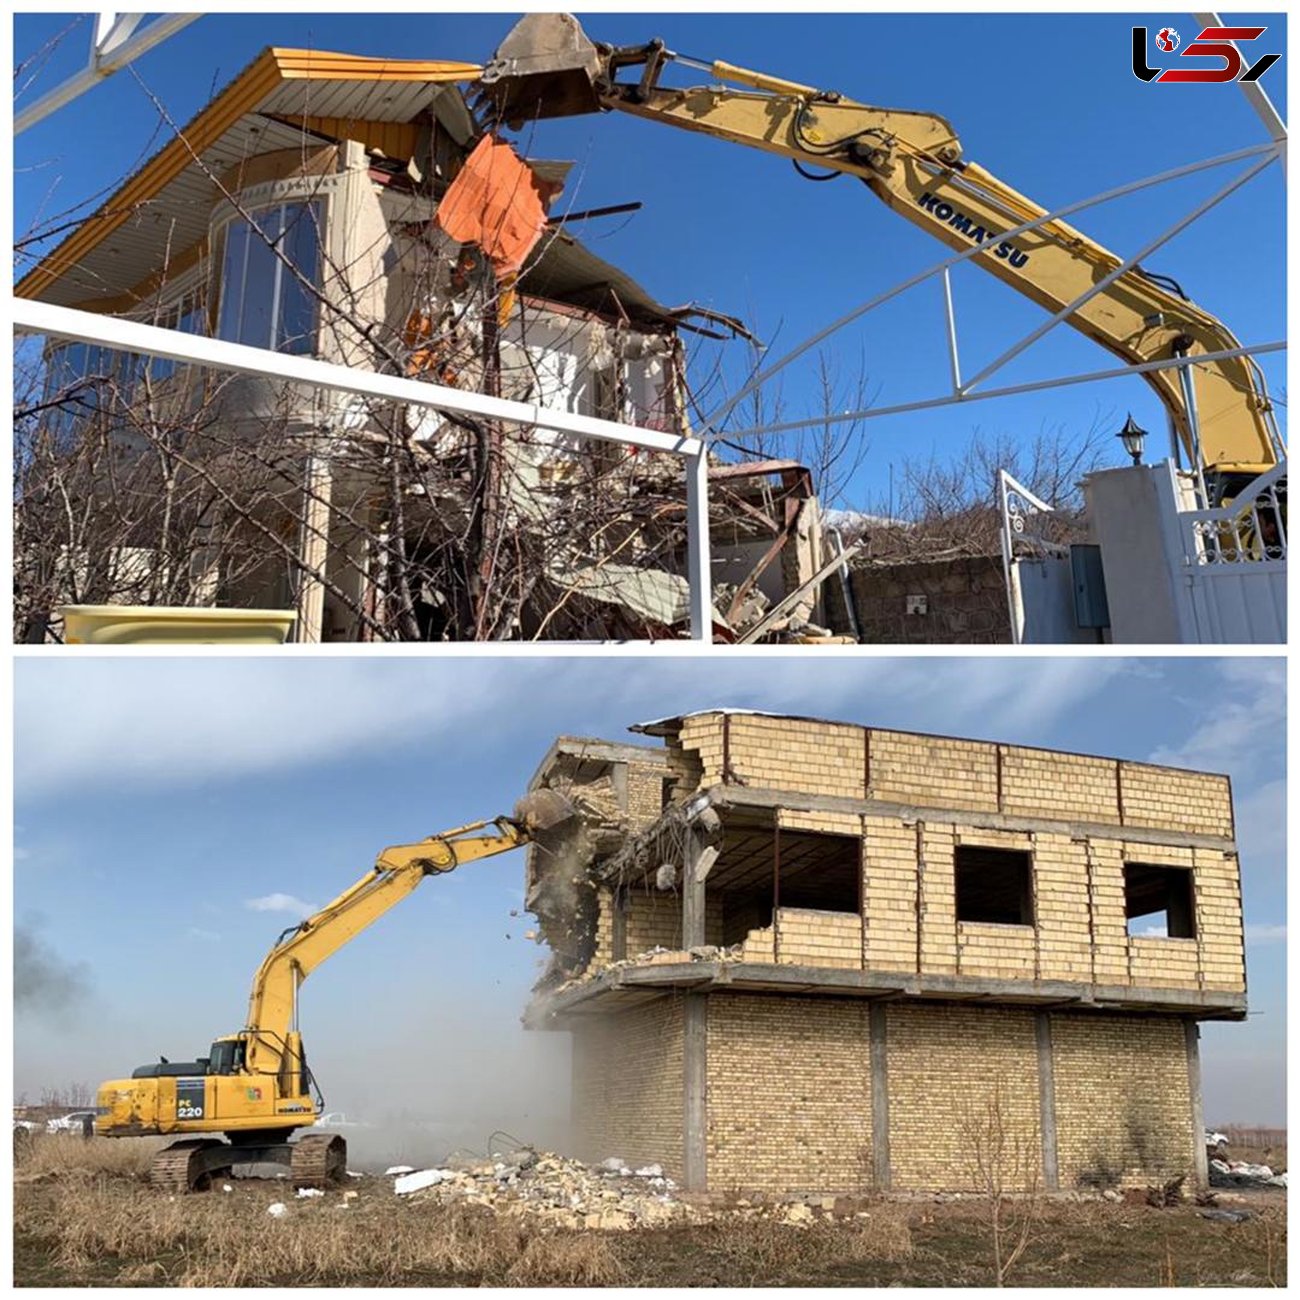 ۱۵ مورد ساخت و ساز غیر مجاز در قزوین تخریب شد
